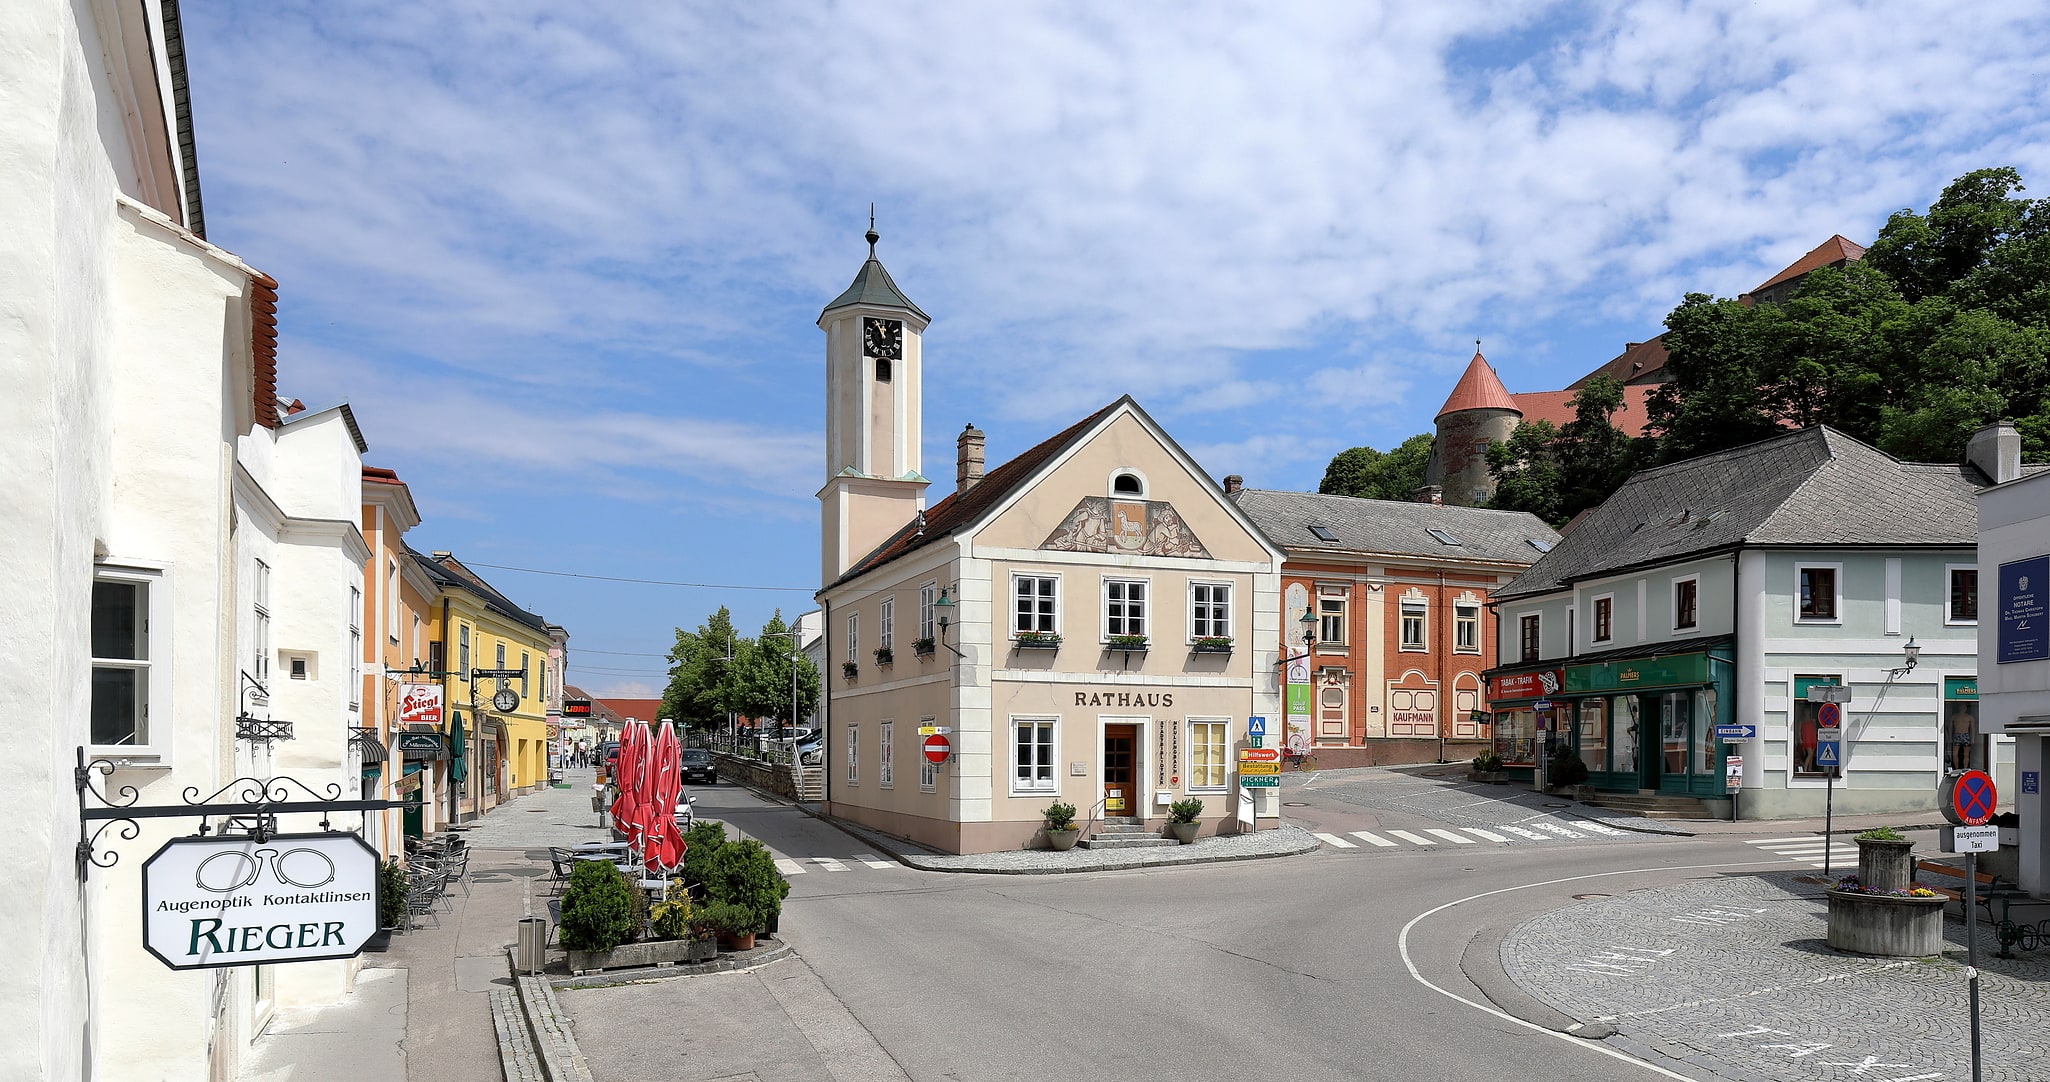 Neulengbach, Austria